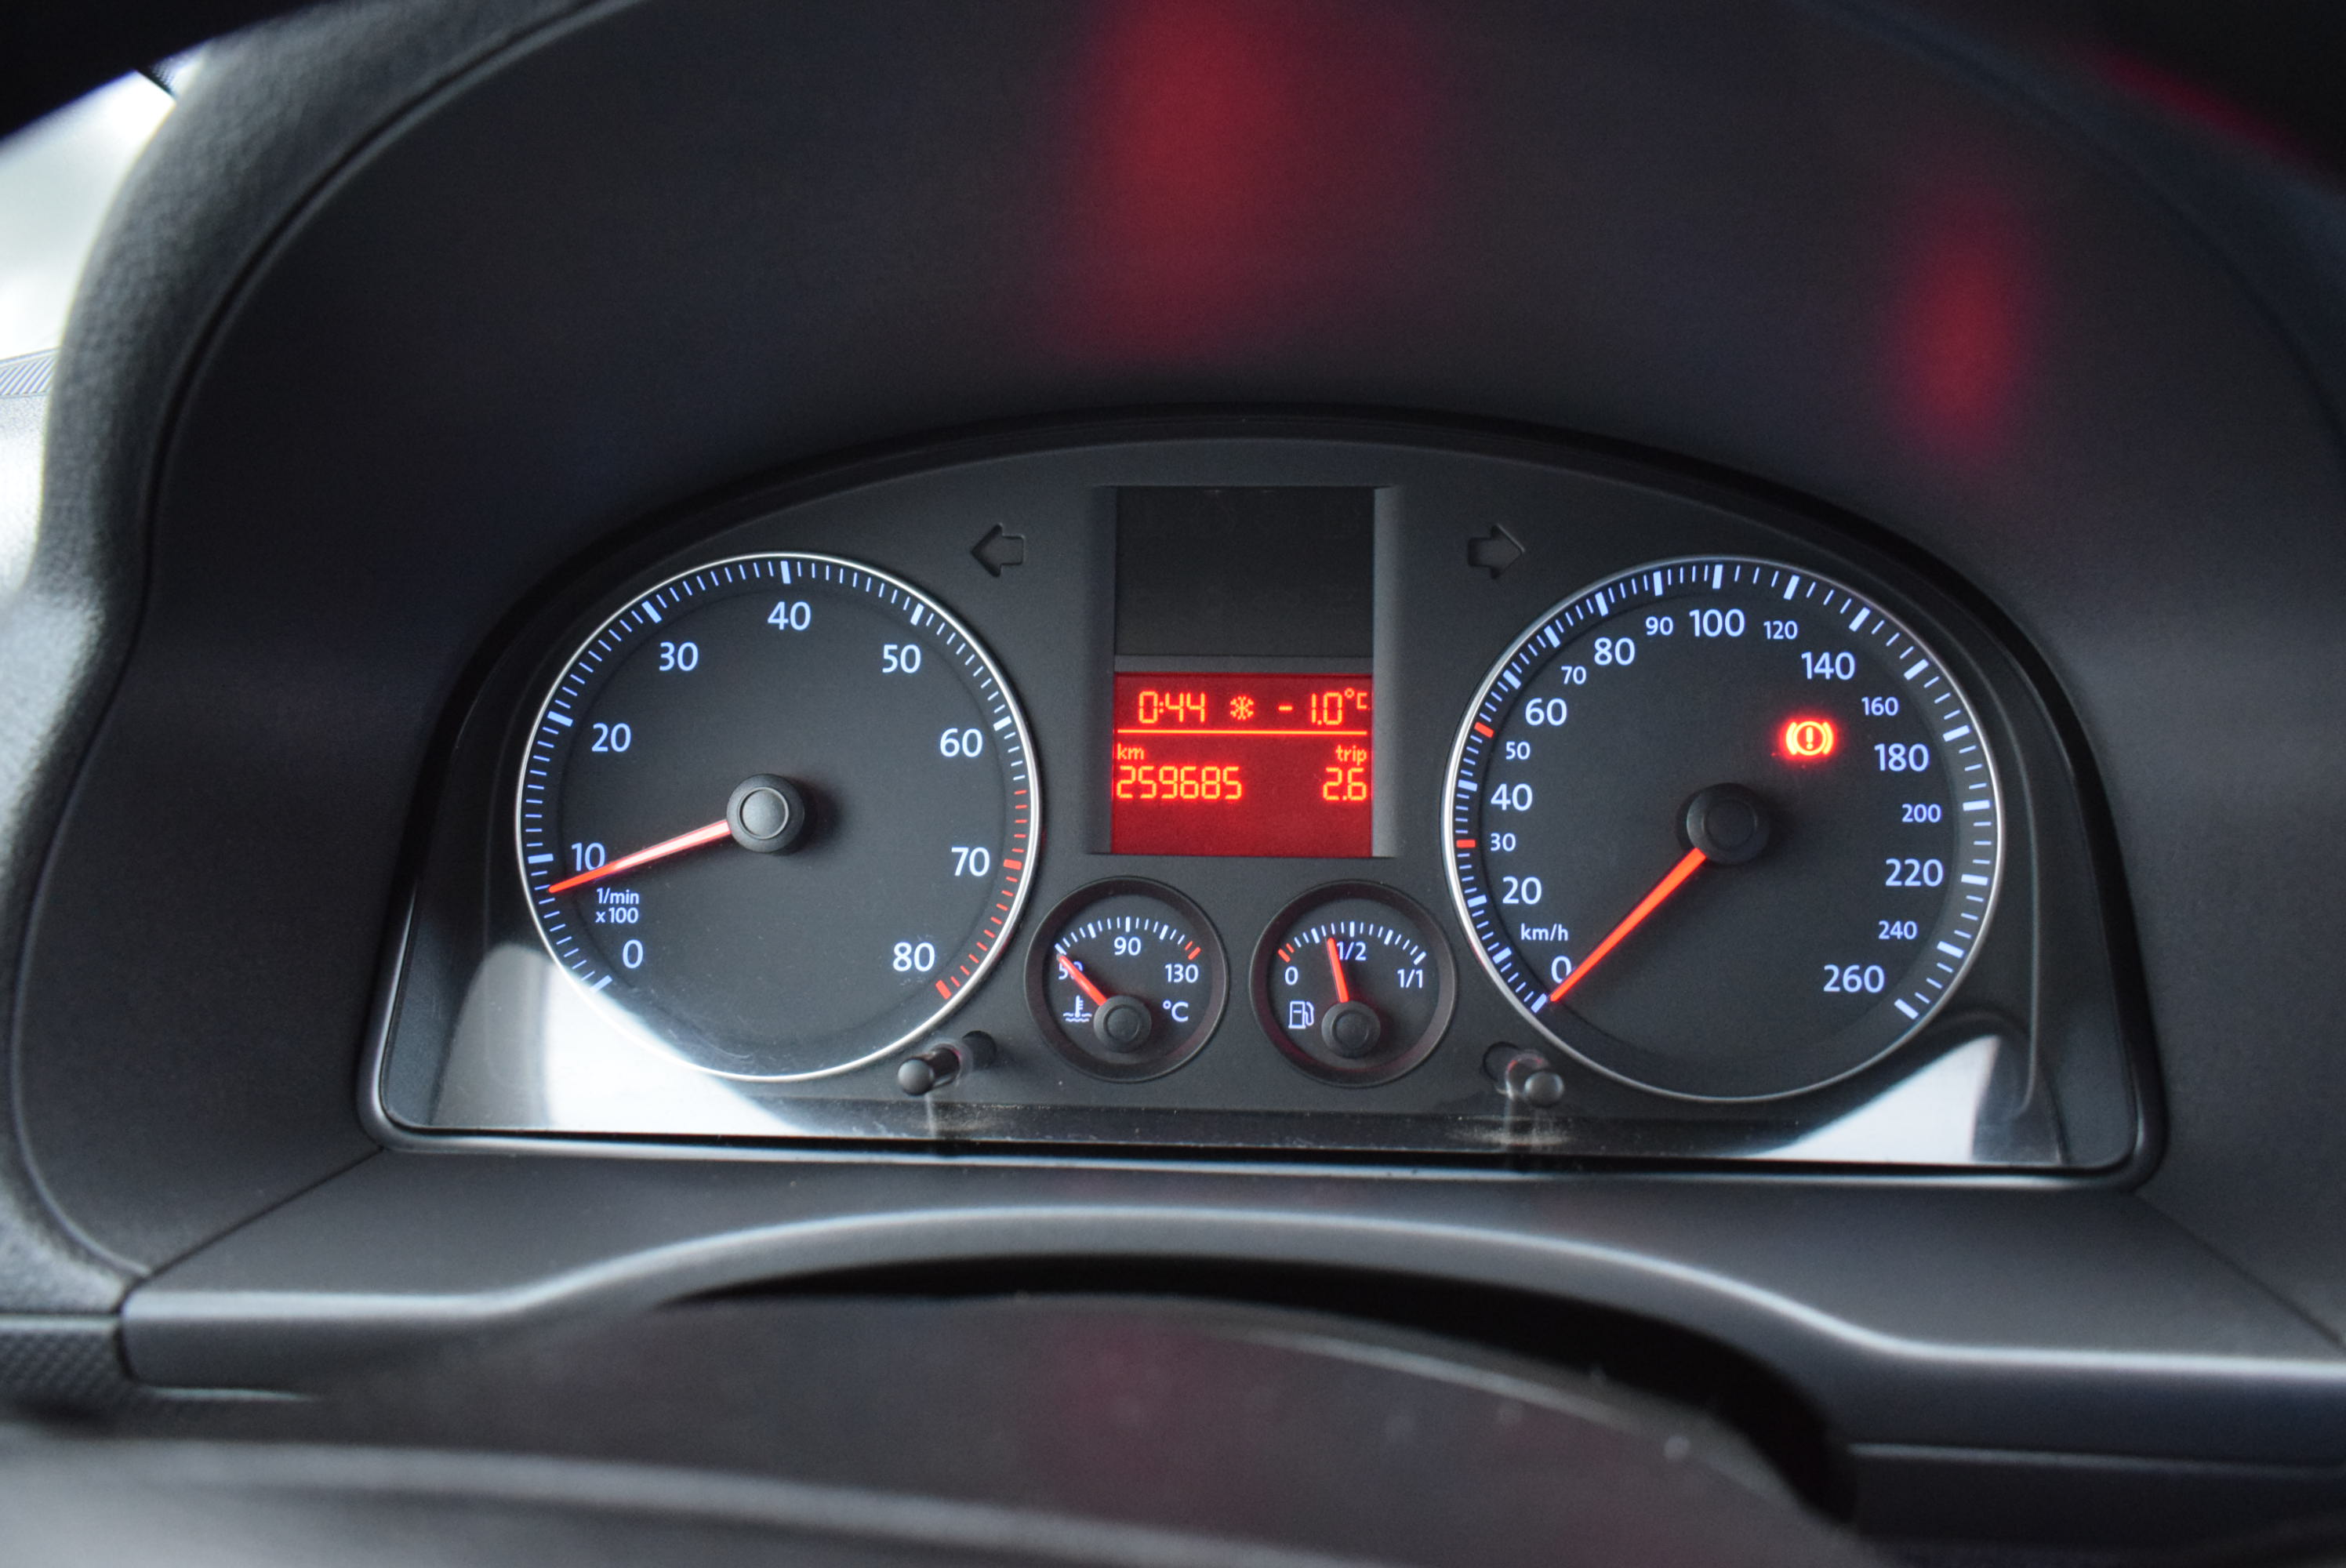 VW Caddy 1.6 Benzyna MPI, 5-Osobowy, 102 PS, Klima, Hak, Najlepsza jednostka silnikowa, Rok Gwarancji full